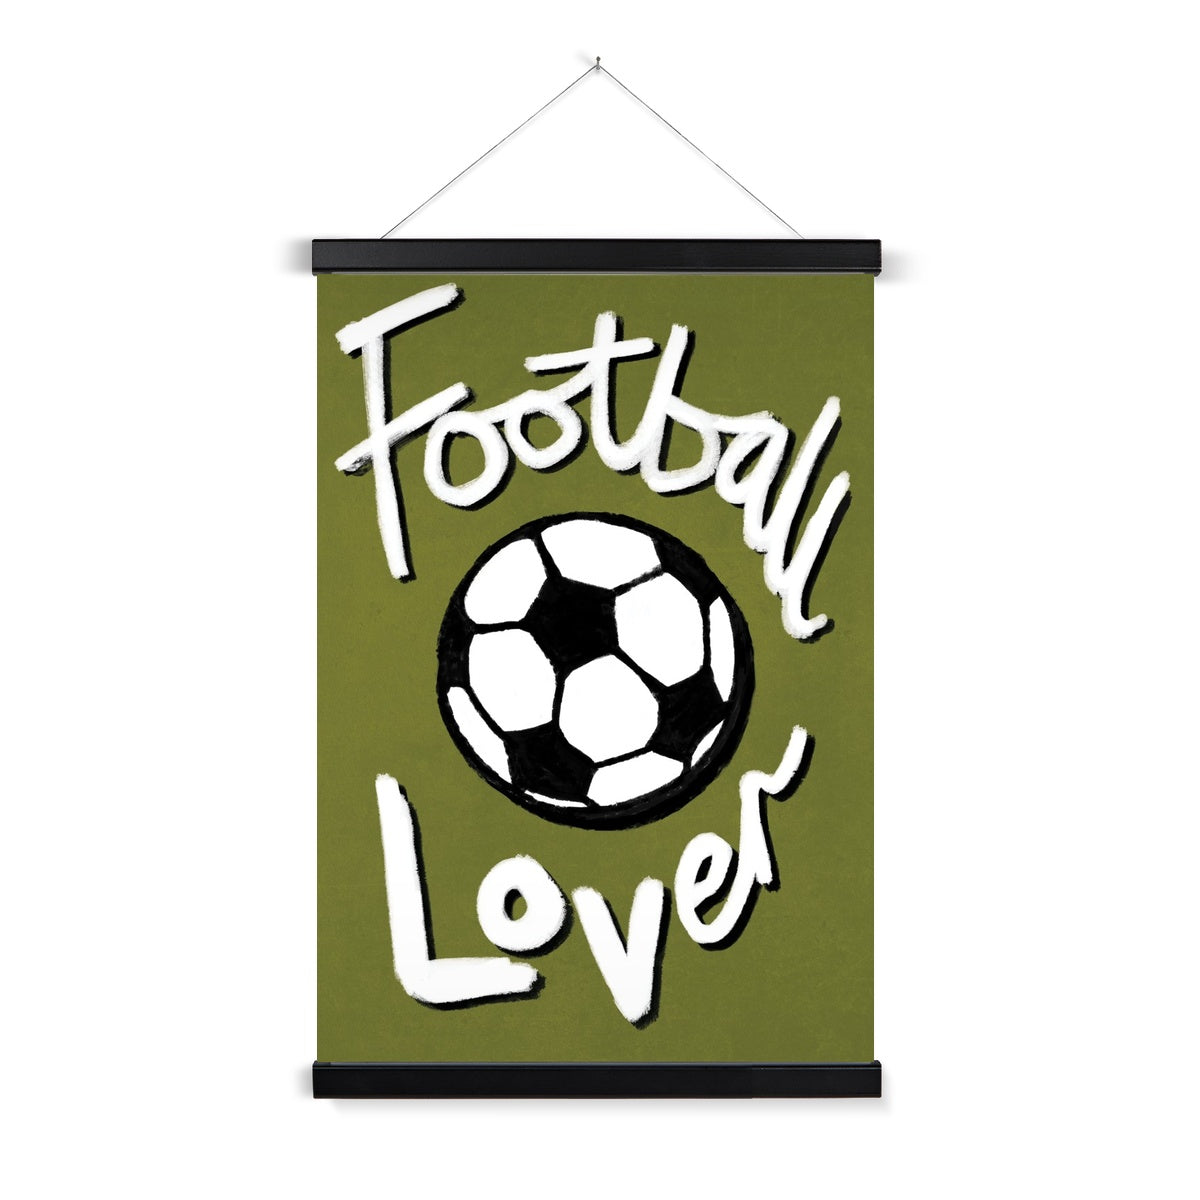 Football Lover Print - Olive Green, Black, White Fine Art Print with Hanger